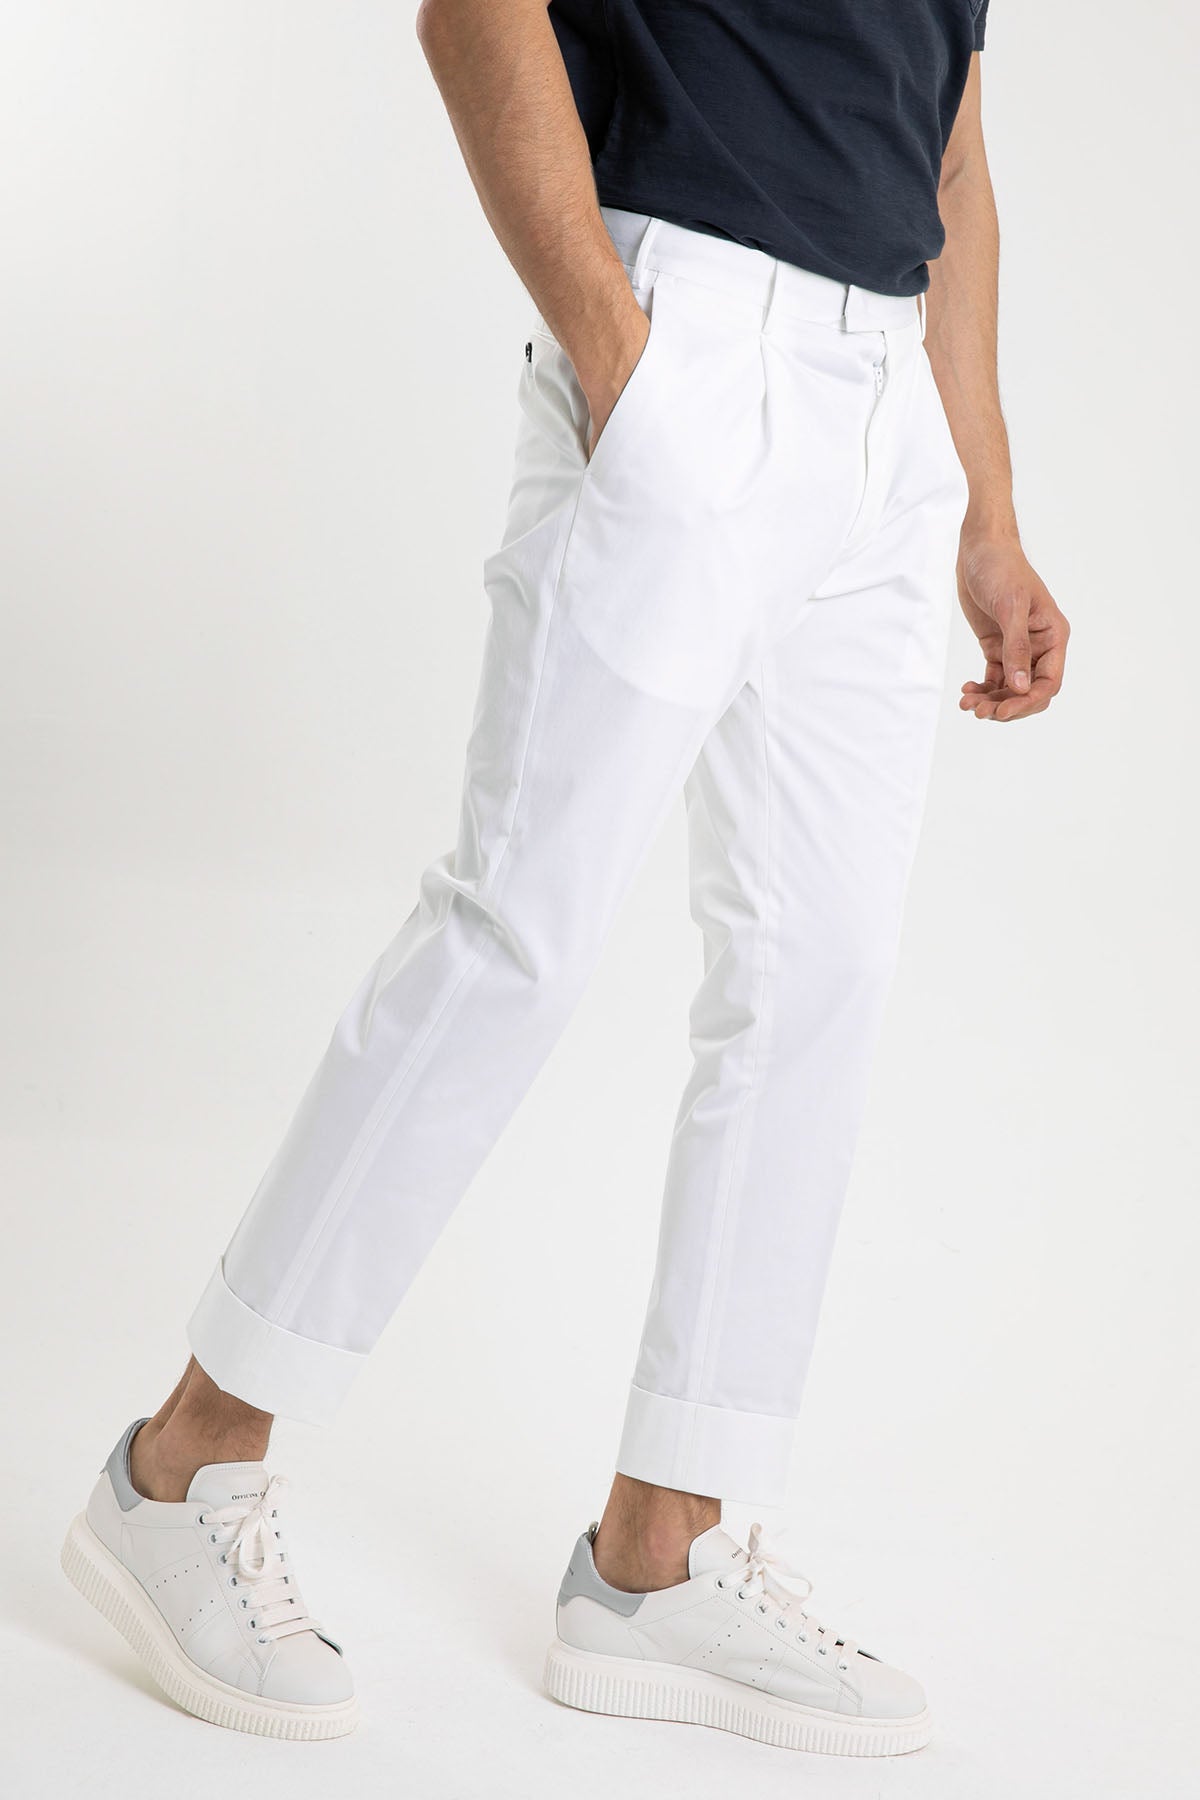 Pantaloni Torino Flicker Kalın Duble Paça Tek Pile Pantolon-Libas Trendy Fashion Store